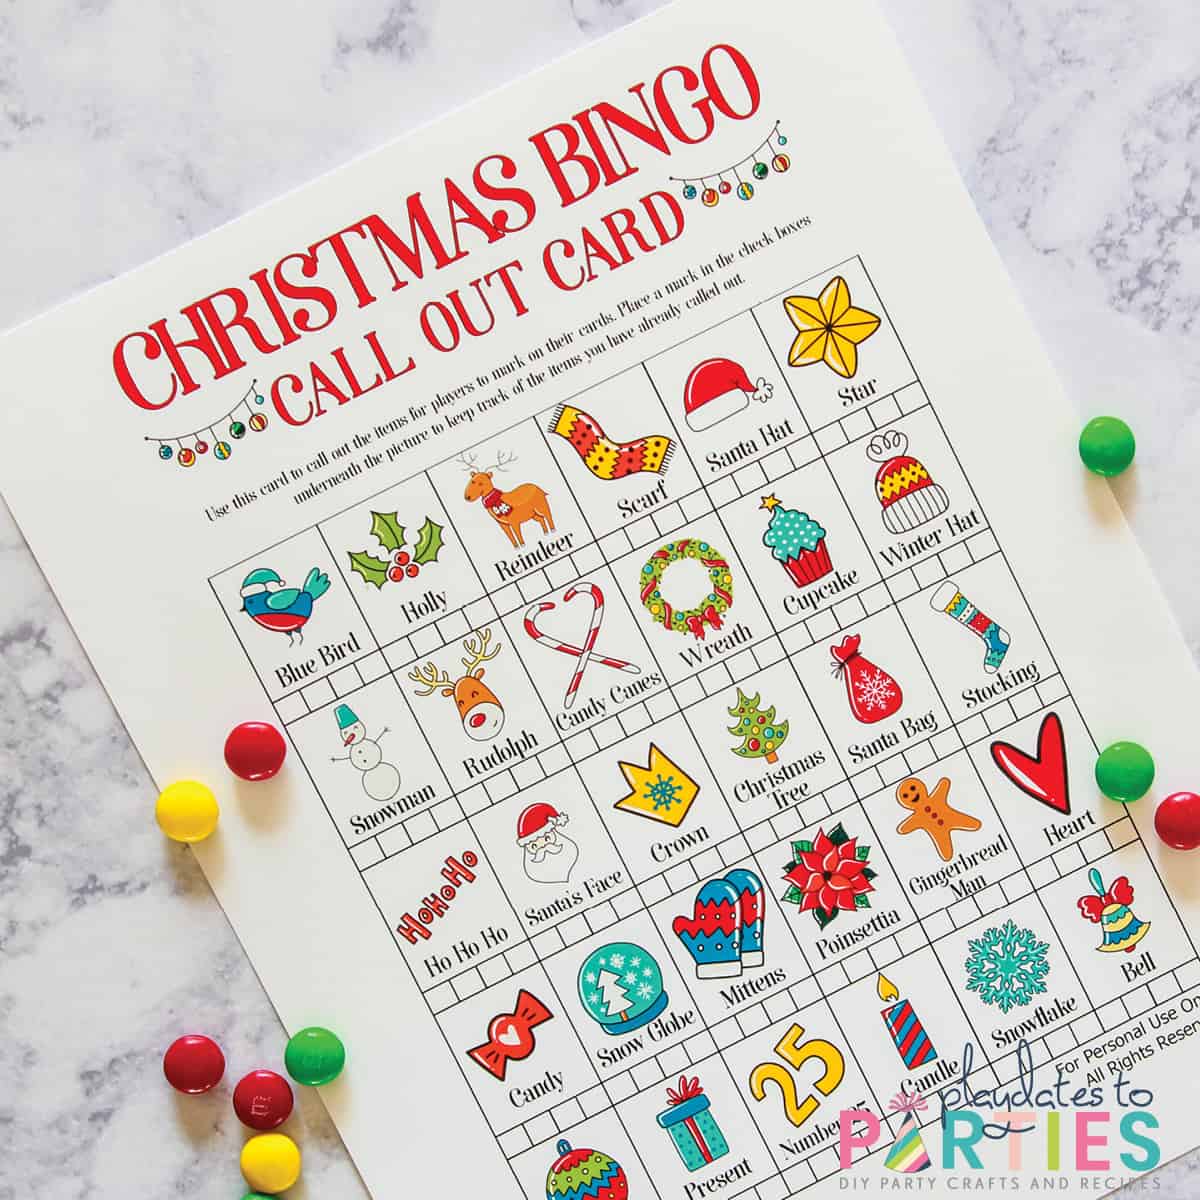 Free Printable Christmas Bingo Cards for Kids